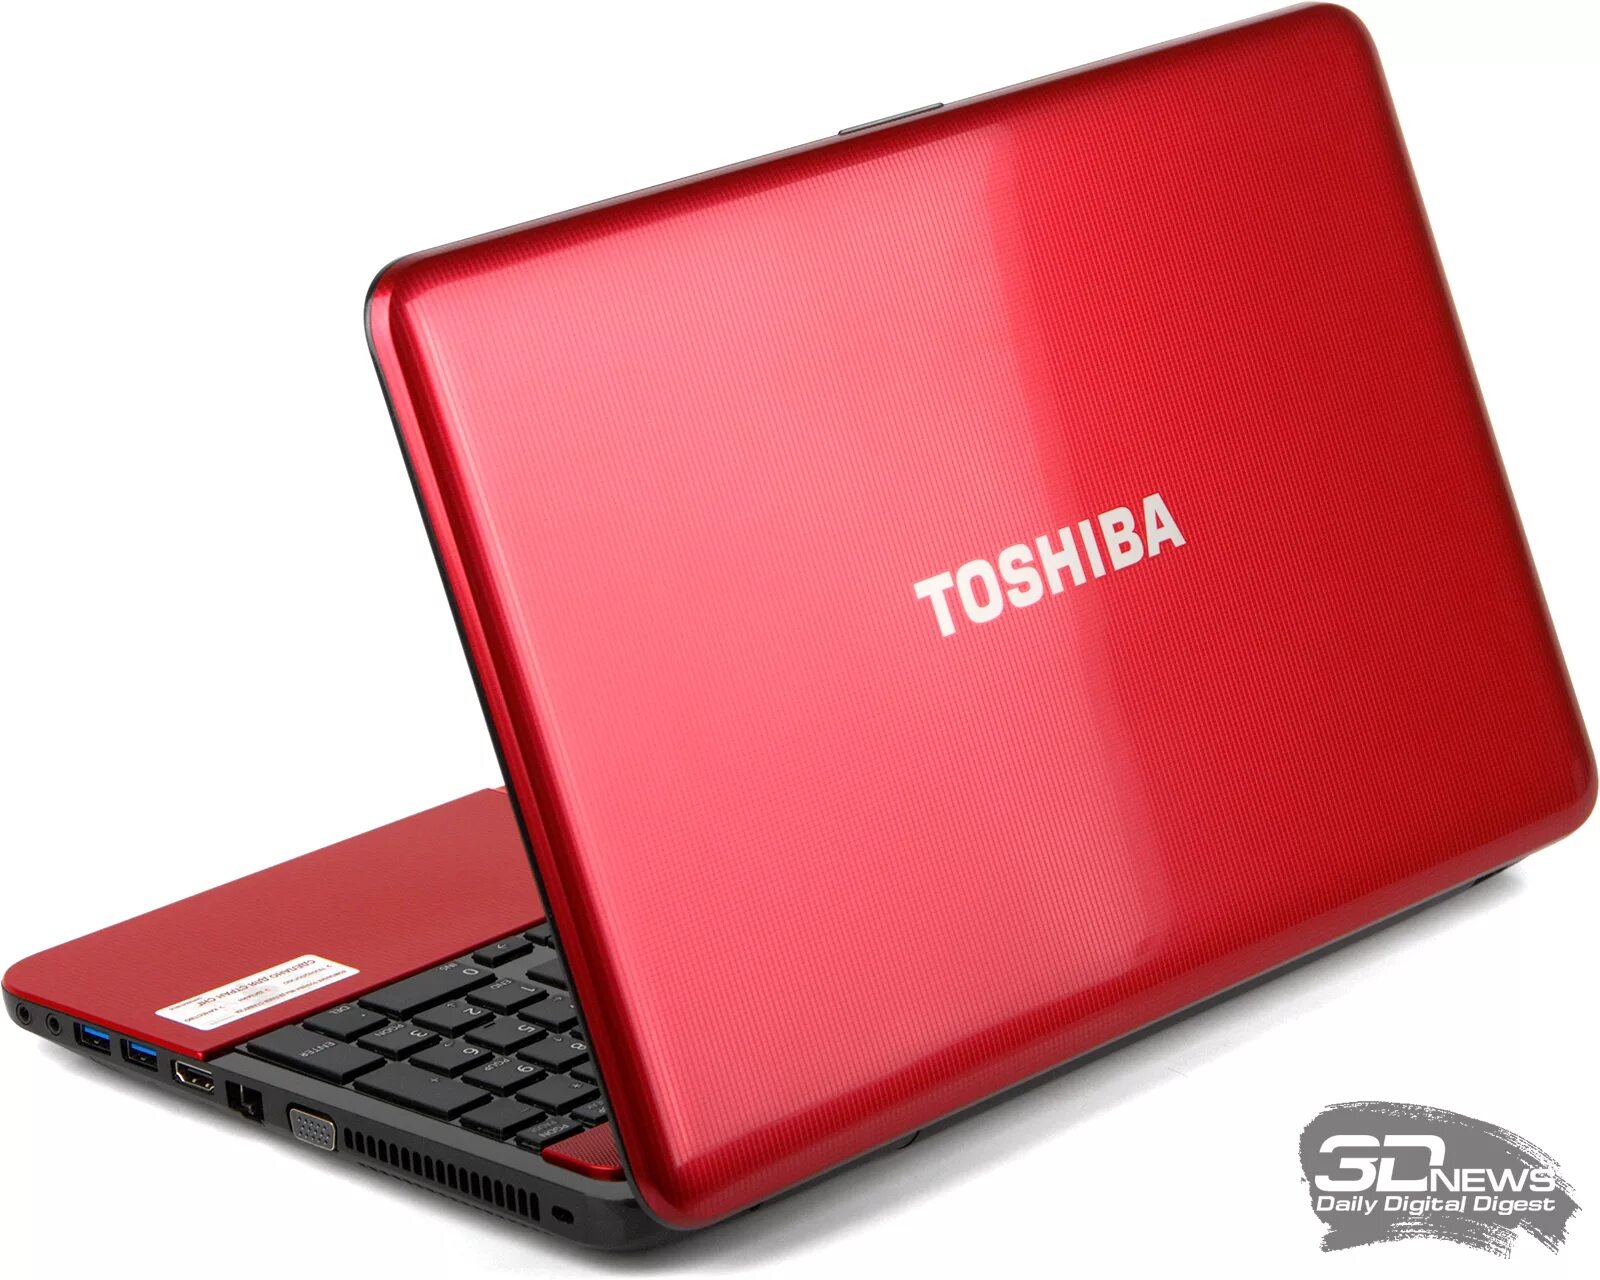 Тошиба 850 Satellite. Ноутбук Toshiba Satellite l750. Toshiba Satellite l850. Красный ноутбук Тошиба r 850. Купить ноутбук челны